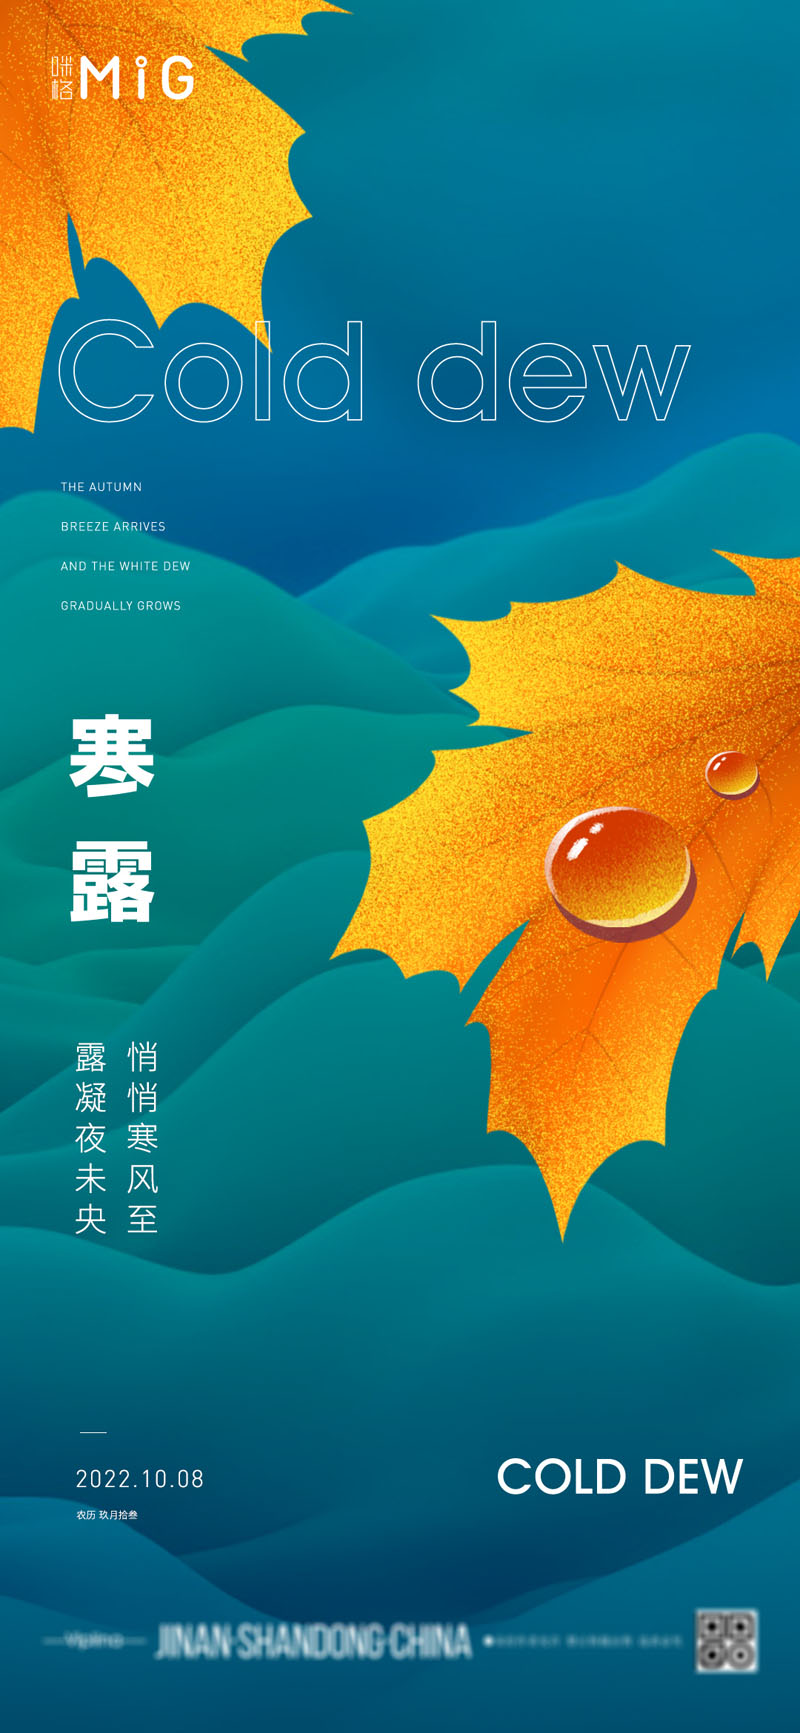 94款中国传统二十四节气之寒露节日海报PSD模板 设计素材 第4张